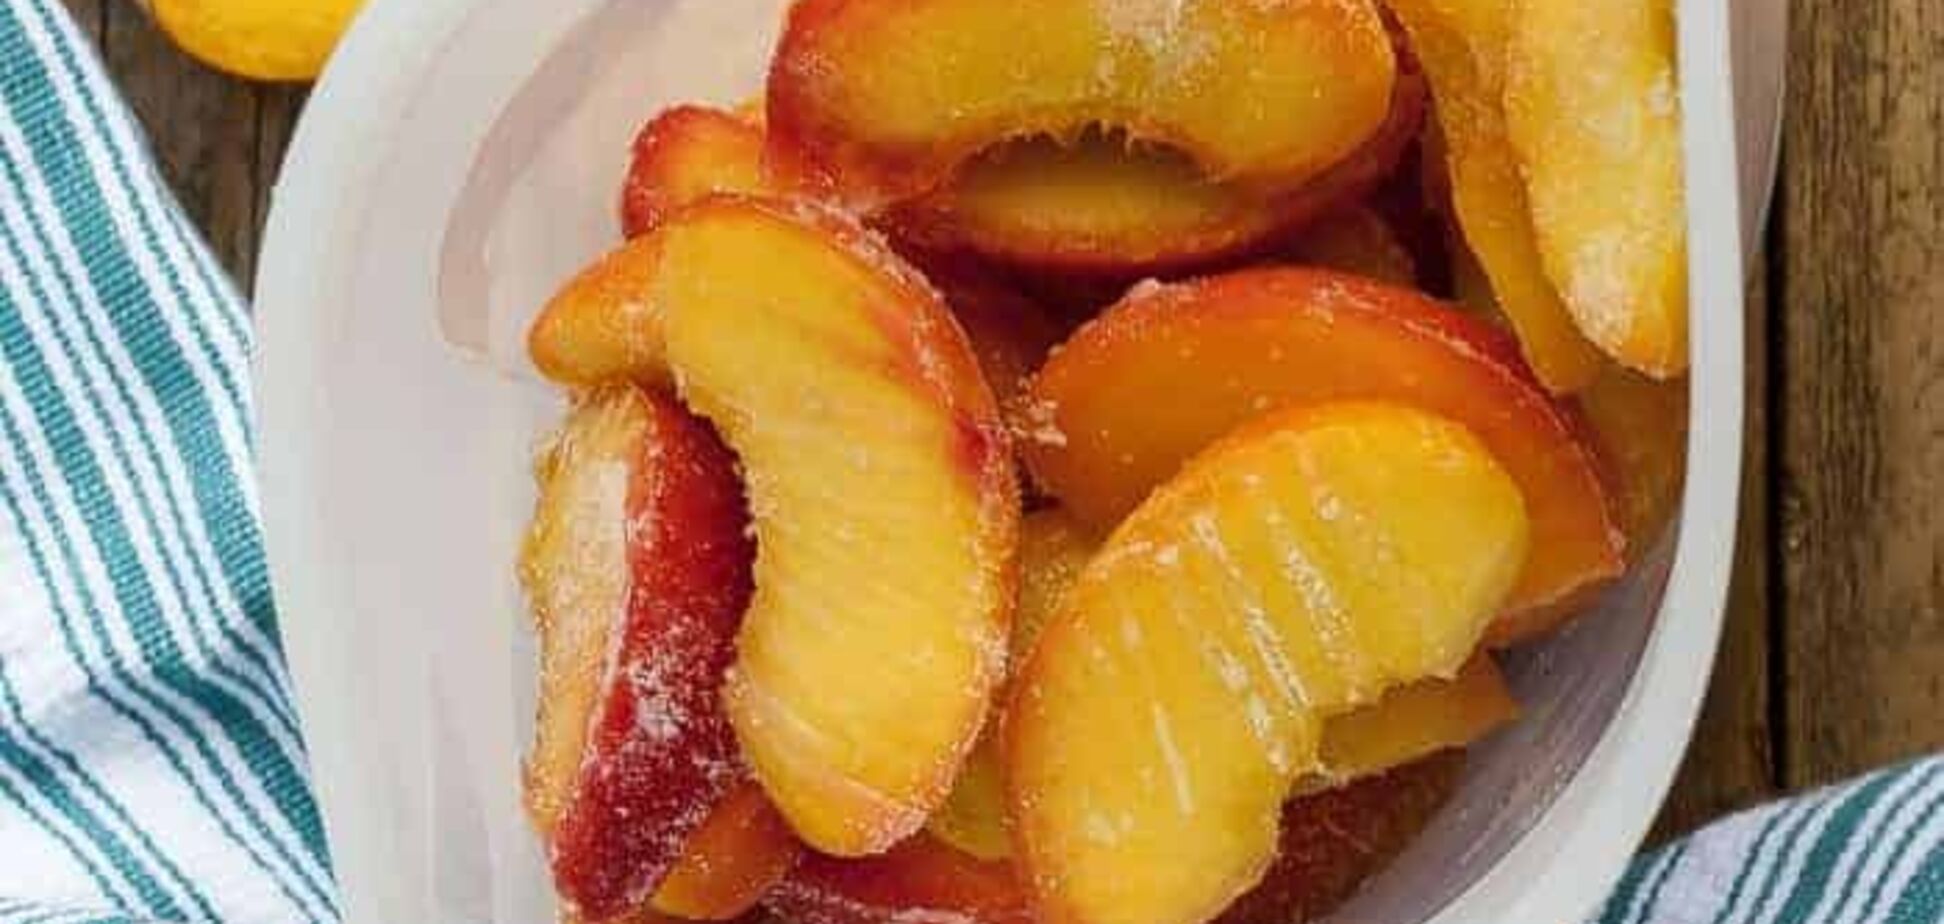 Як заморожувати абрикоси, персики та сливи: найзручніші способи